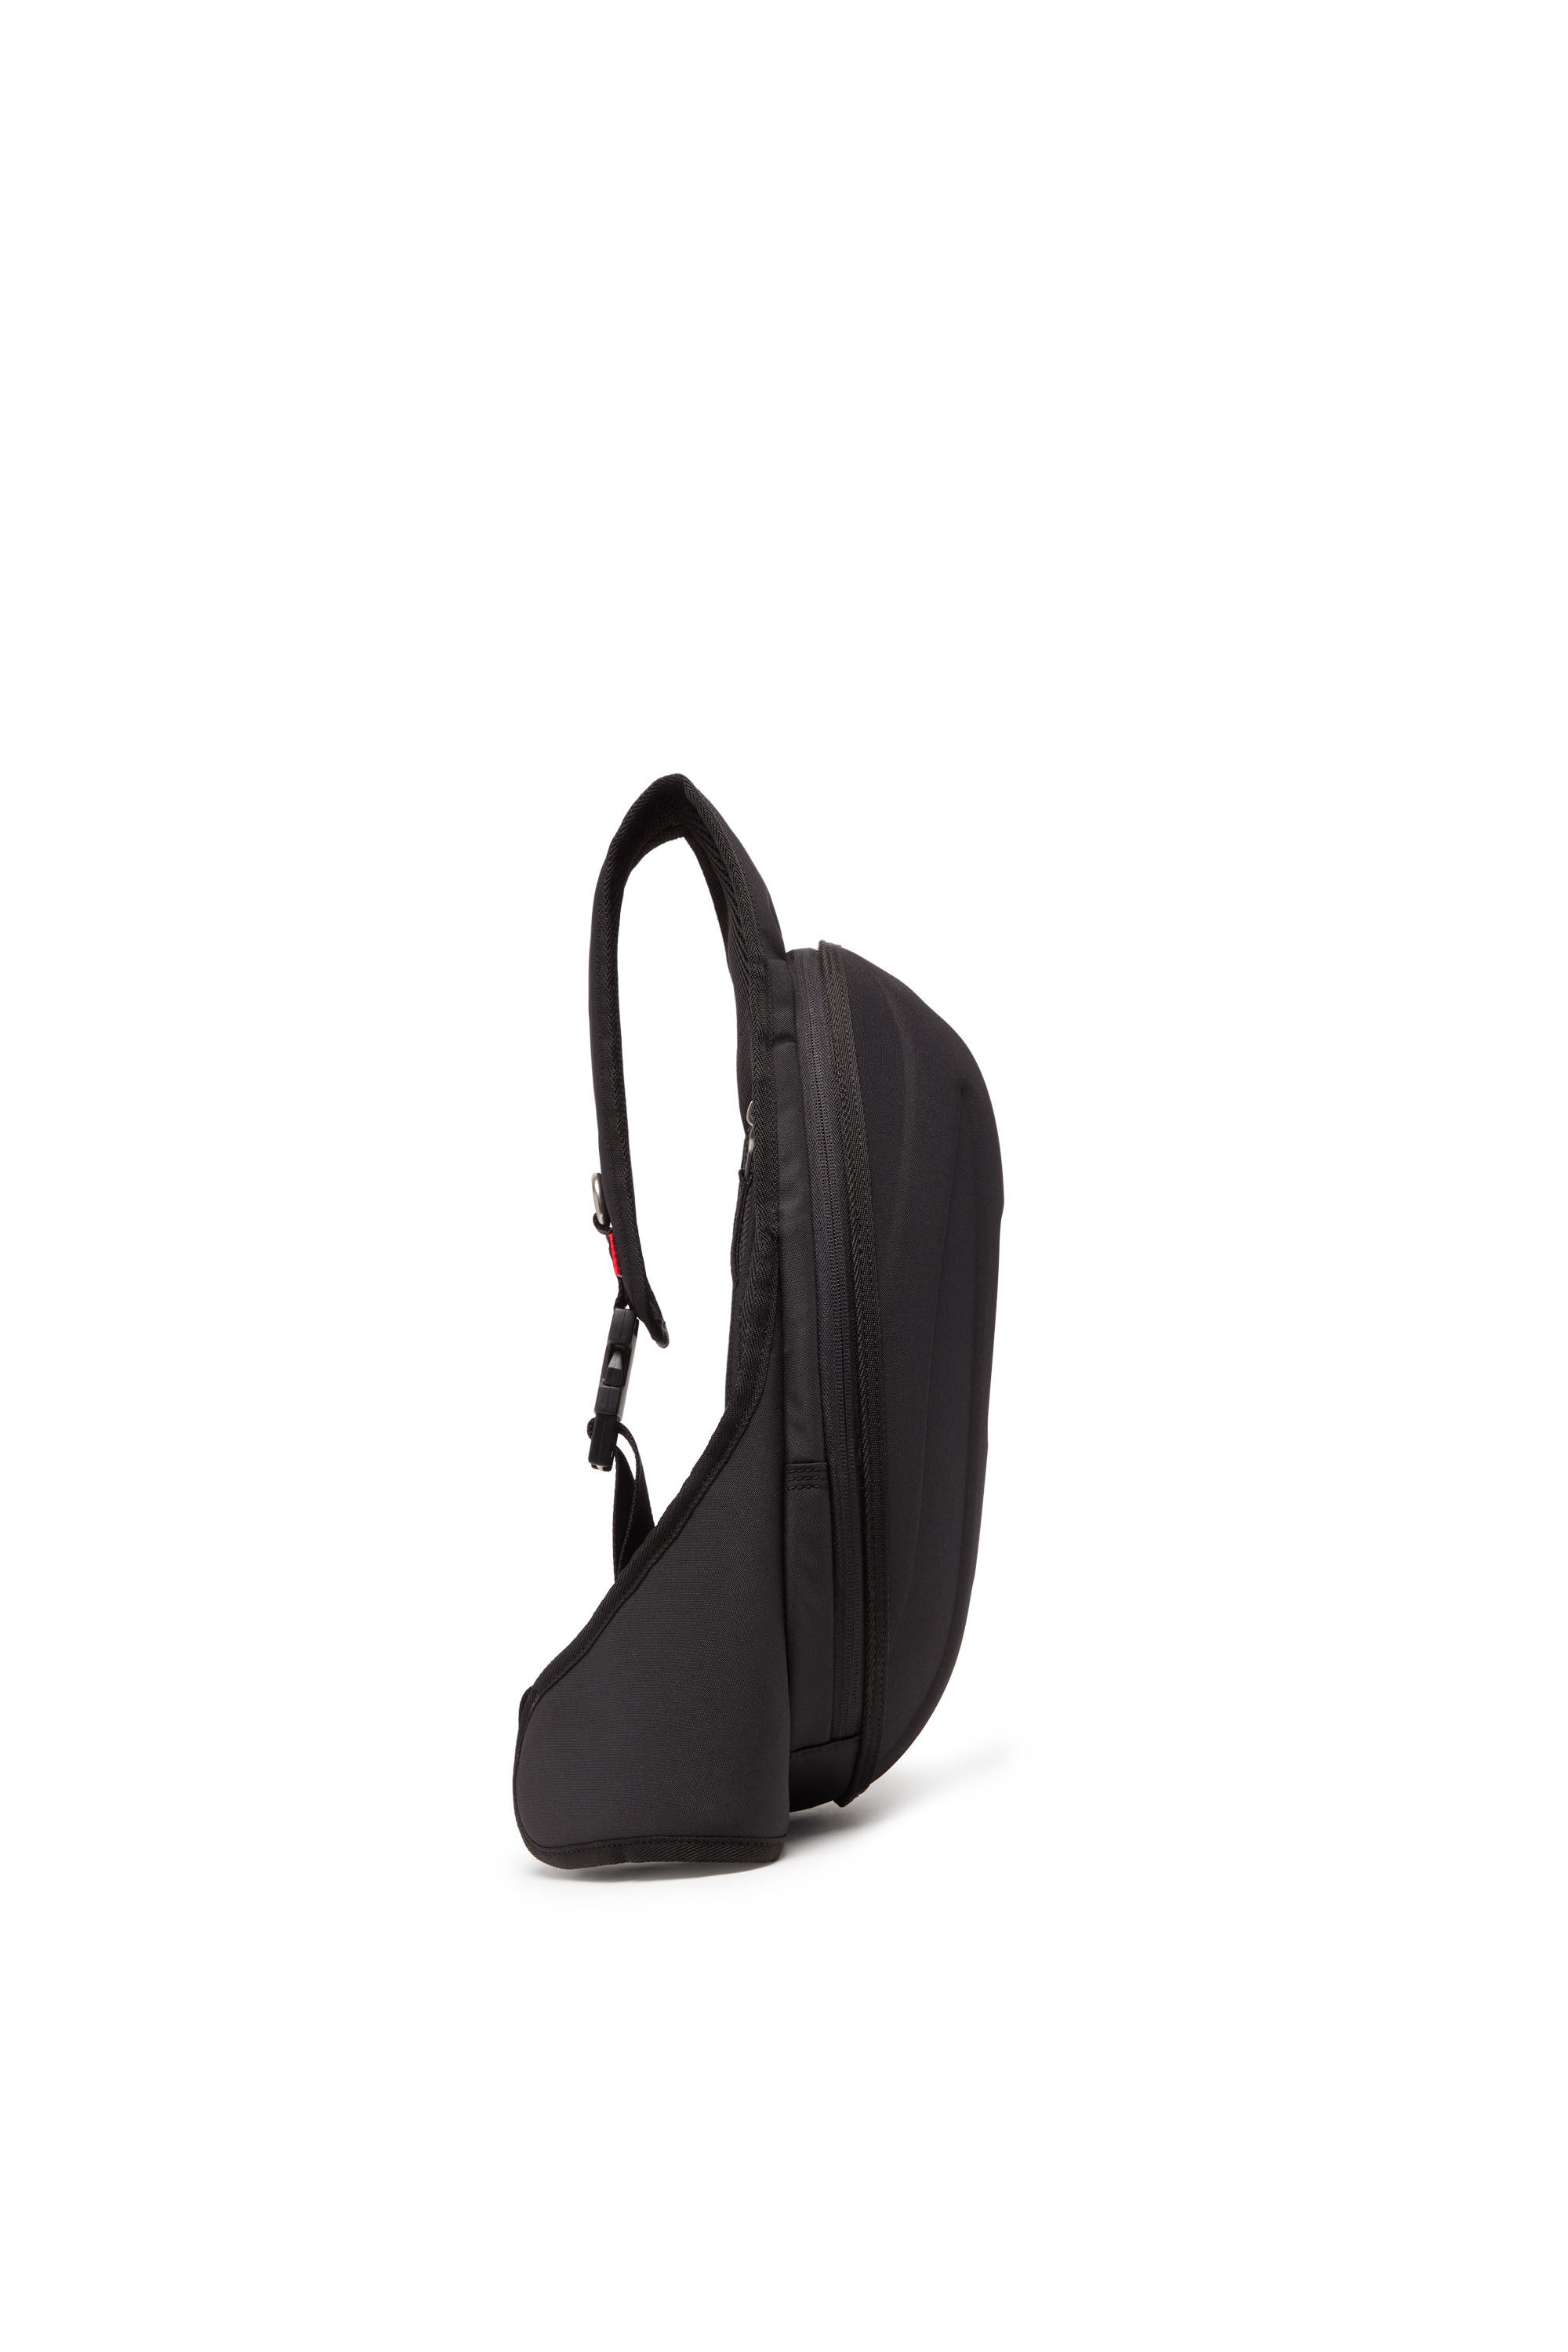 Diesel - 1DR-POD SLING BAG, Man 1DR-Pod Sling Bag - Hard shell sling backpack in Black - Image 4